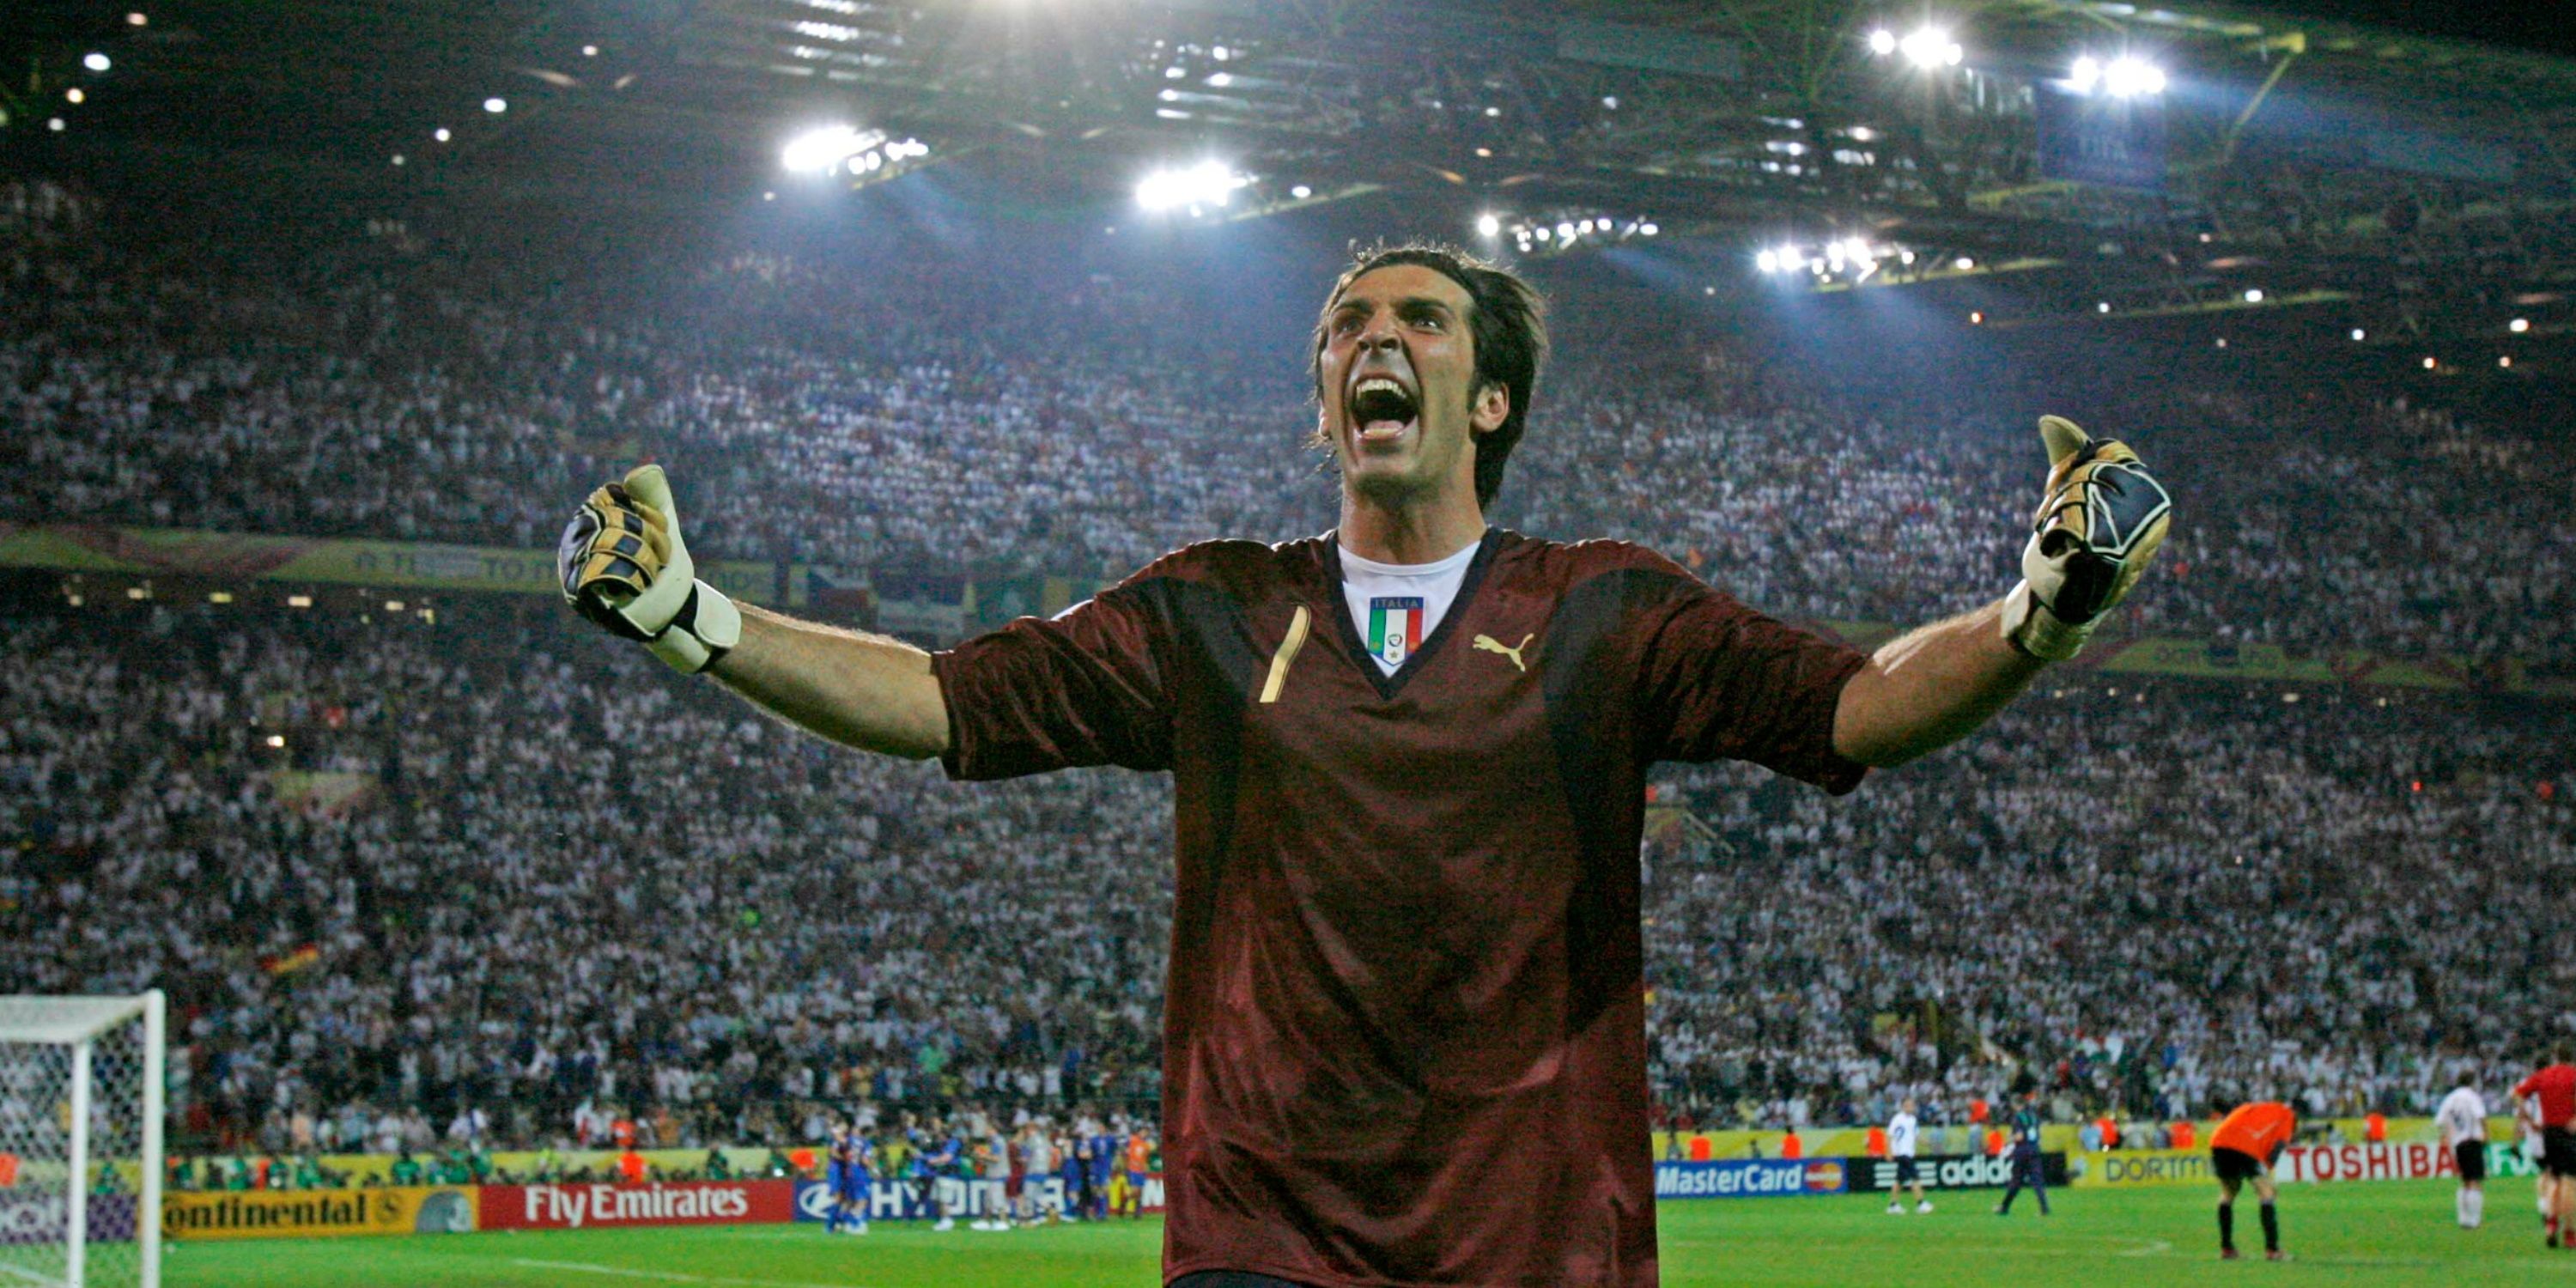 Italy goalkeeper Gianluigi Buffon celebrating